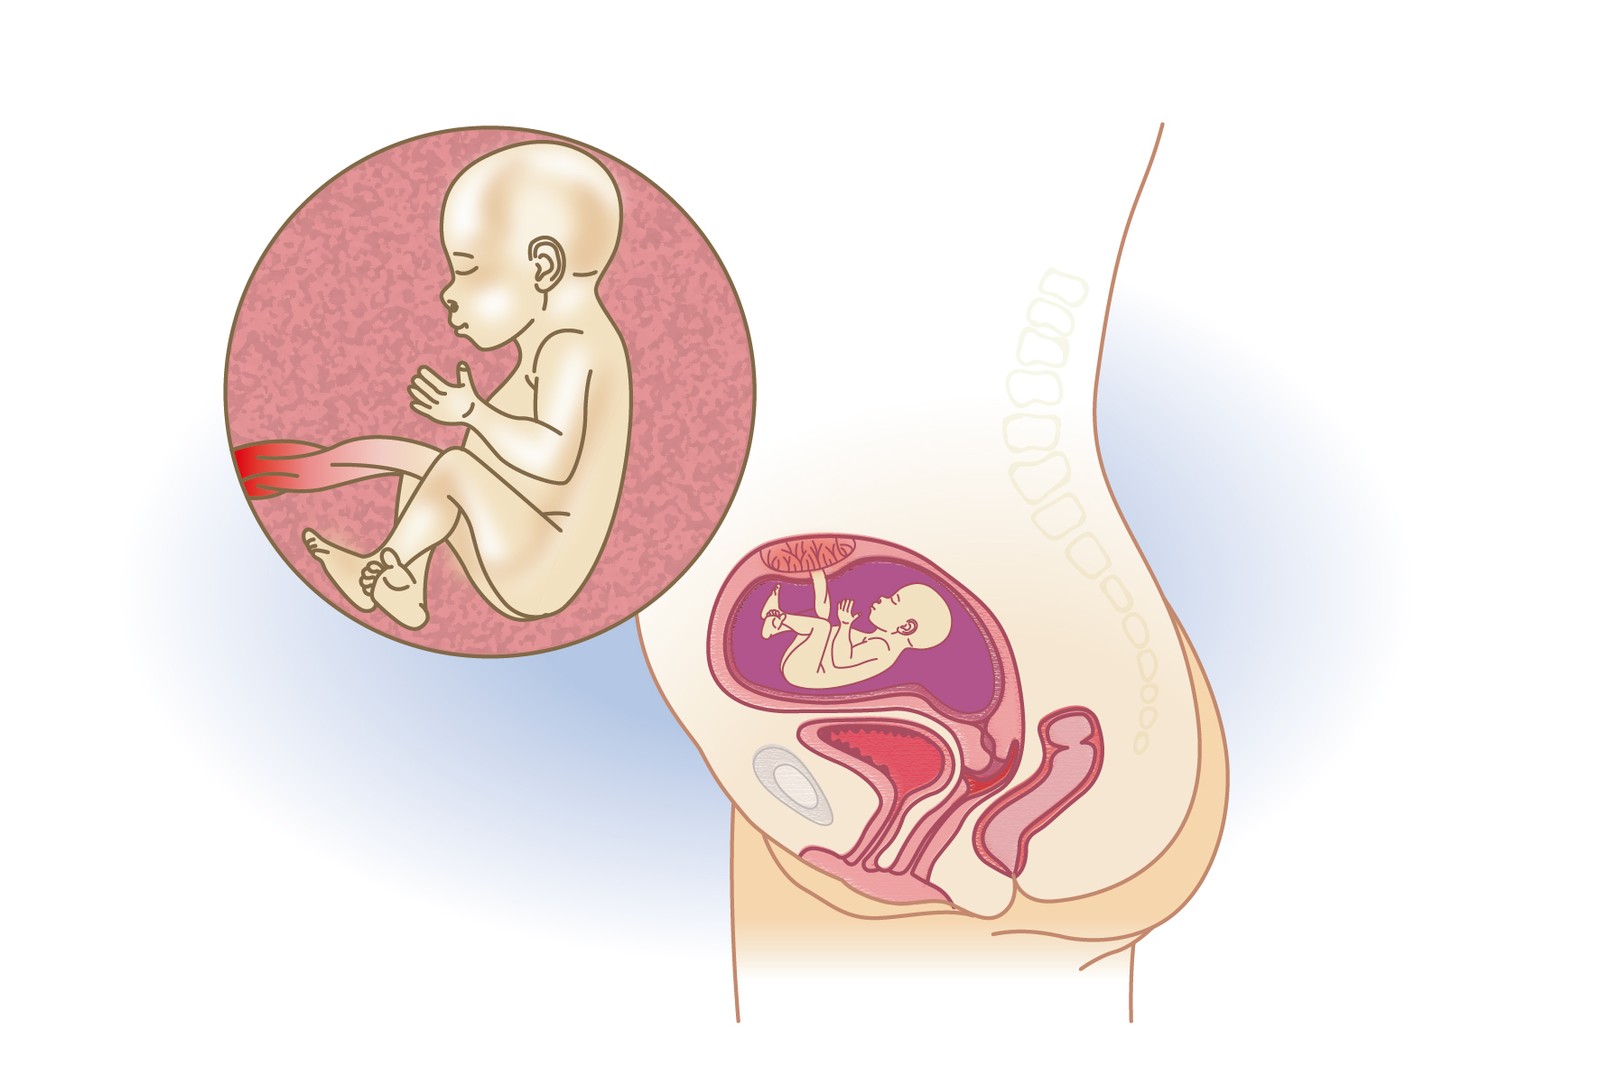 Plod v 21. týdnu těhotenství